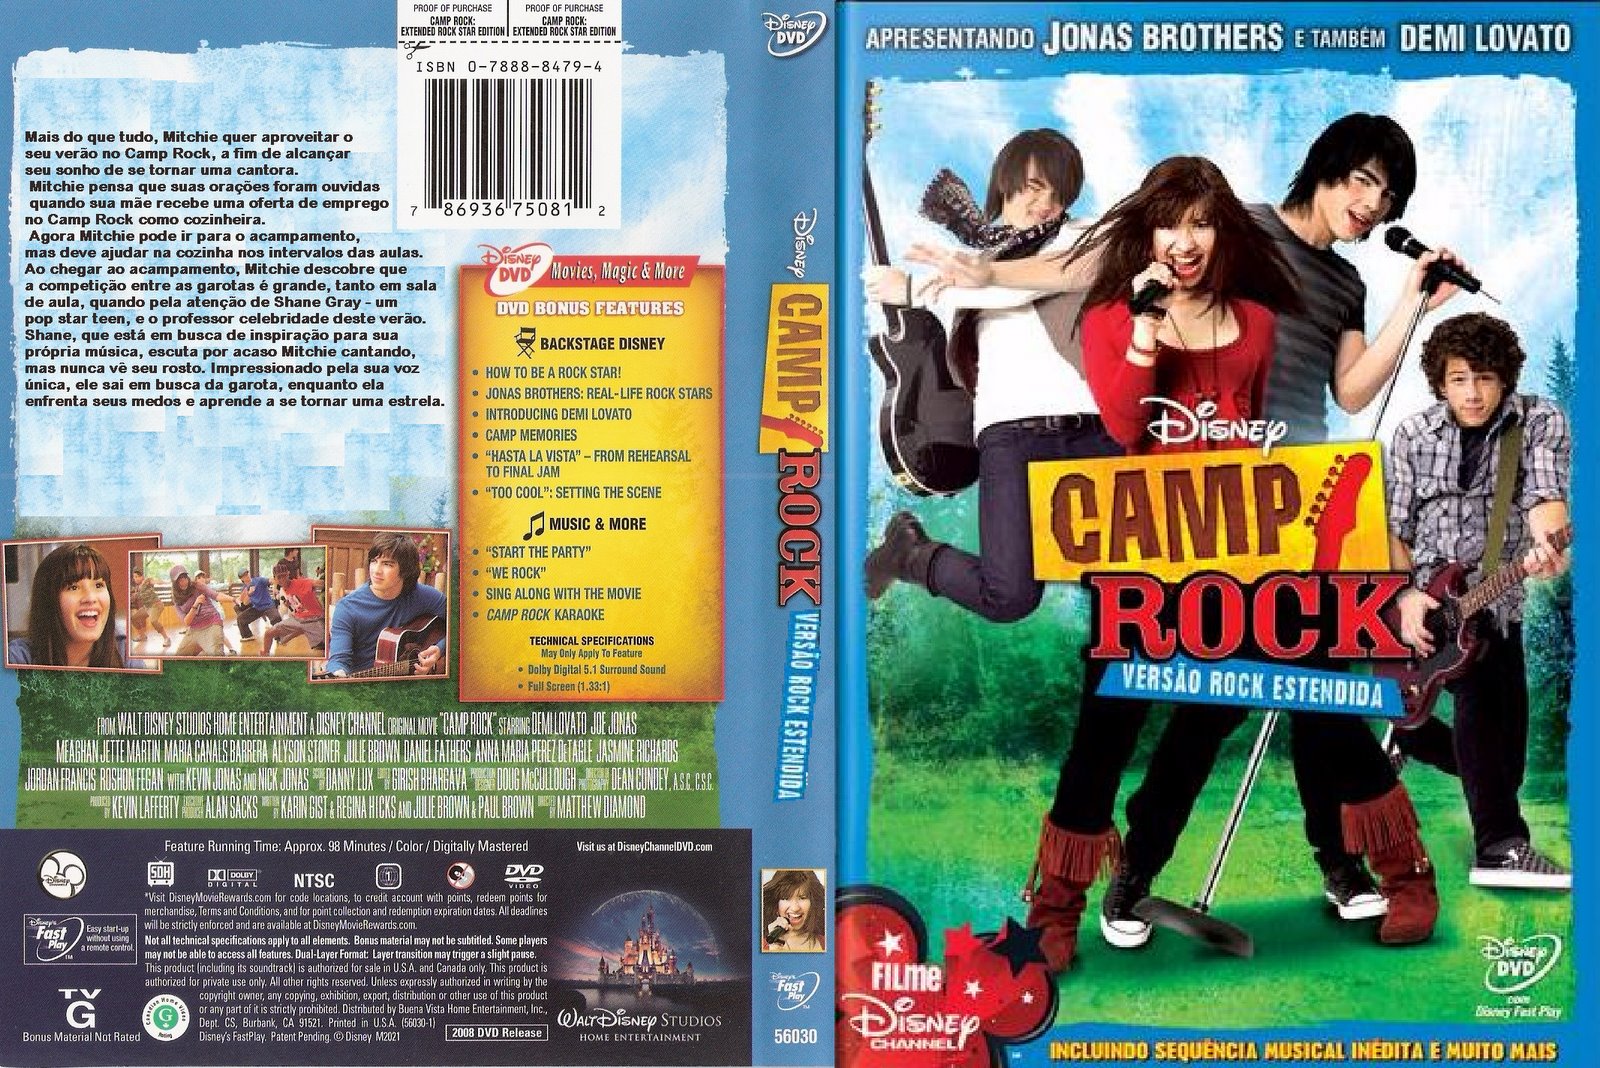 Capa Grátis: Camp Rock 1.